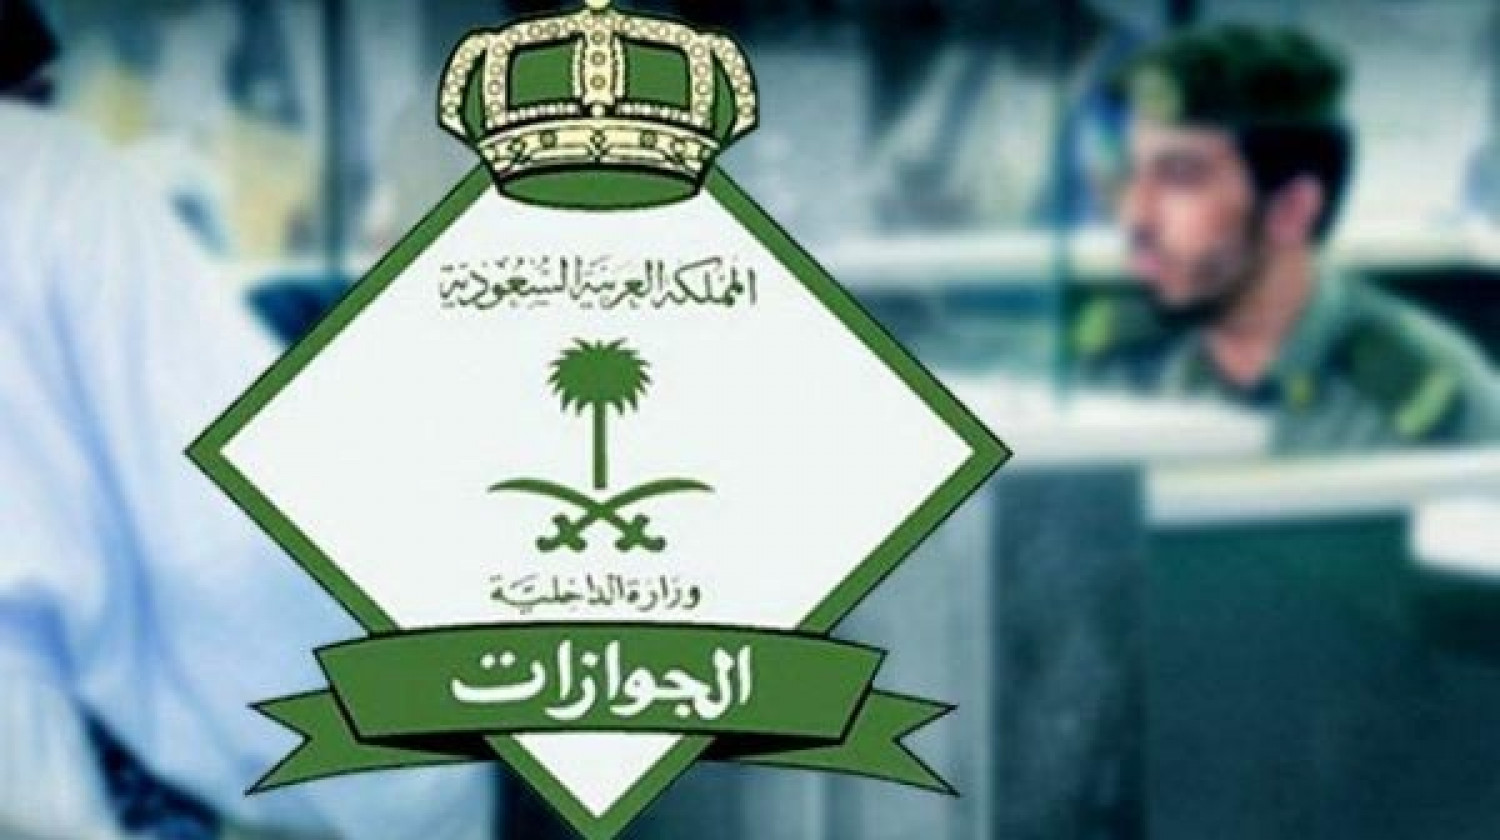 الجوازات السعودية تزف القرار المنتظر لتلك الفئة من الوافدين وتسمح لهم بالدخول إلى المملكة دون تأشيرة دخول وفق شروط محددة